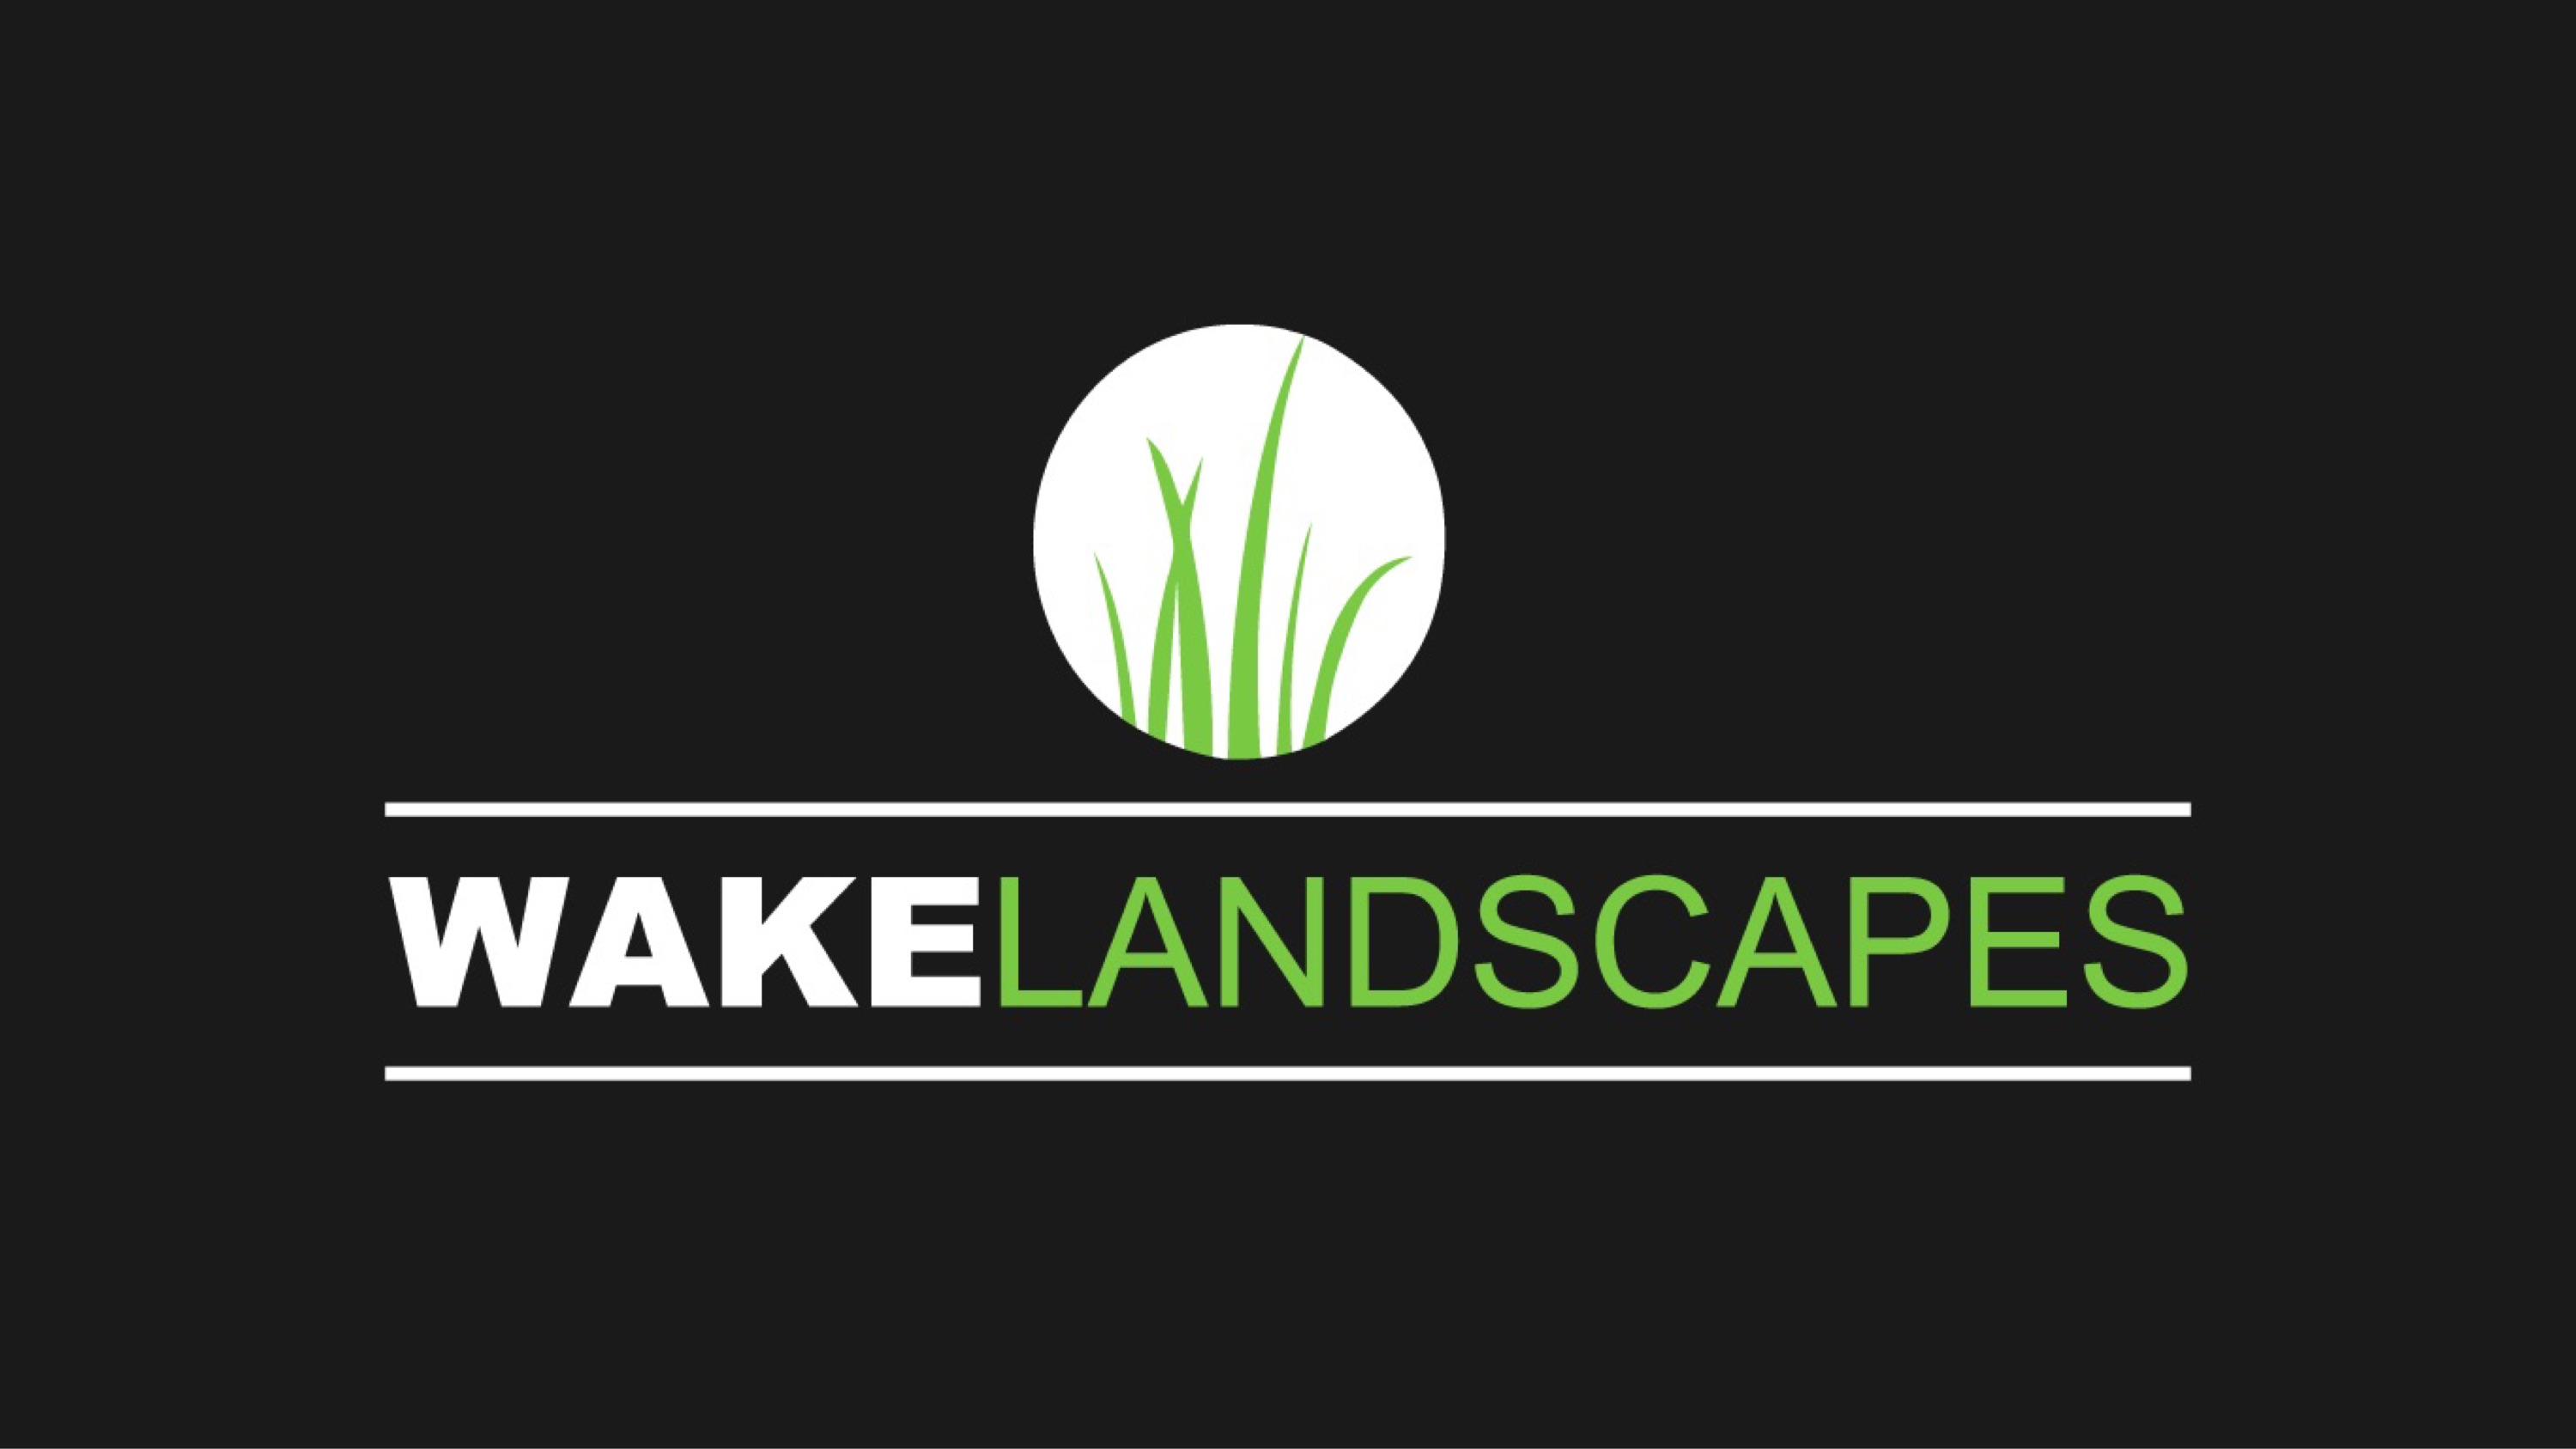 Wake Landscapes Logo